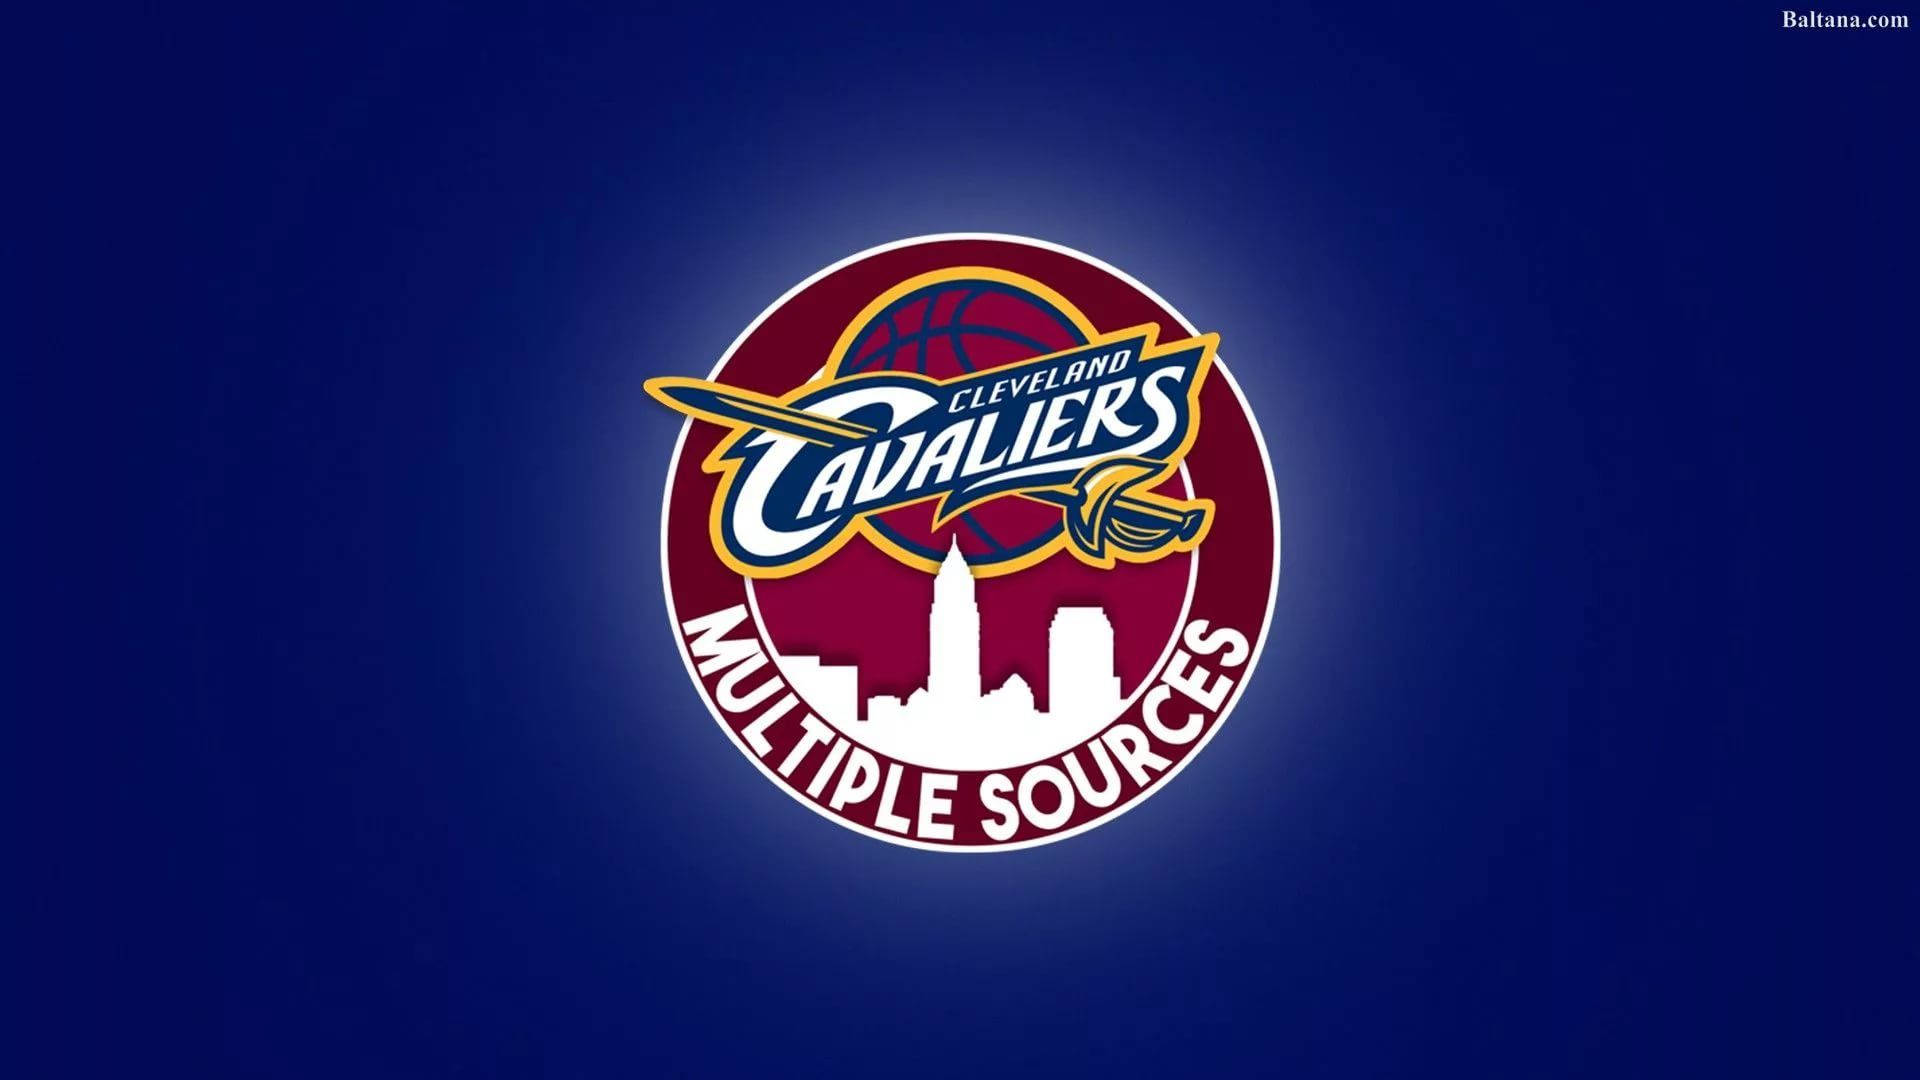 Logotipodel Contorno De La Ciudad De Los Cleveland Cavaliers. Fondo de pantalla